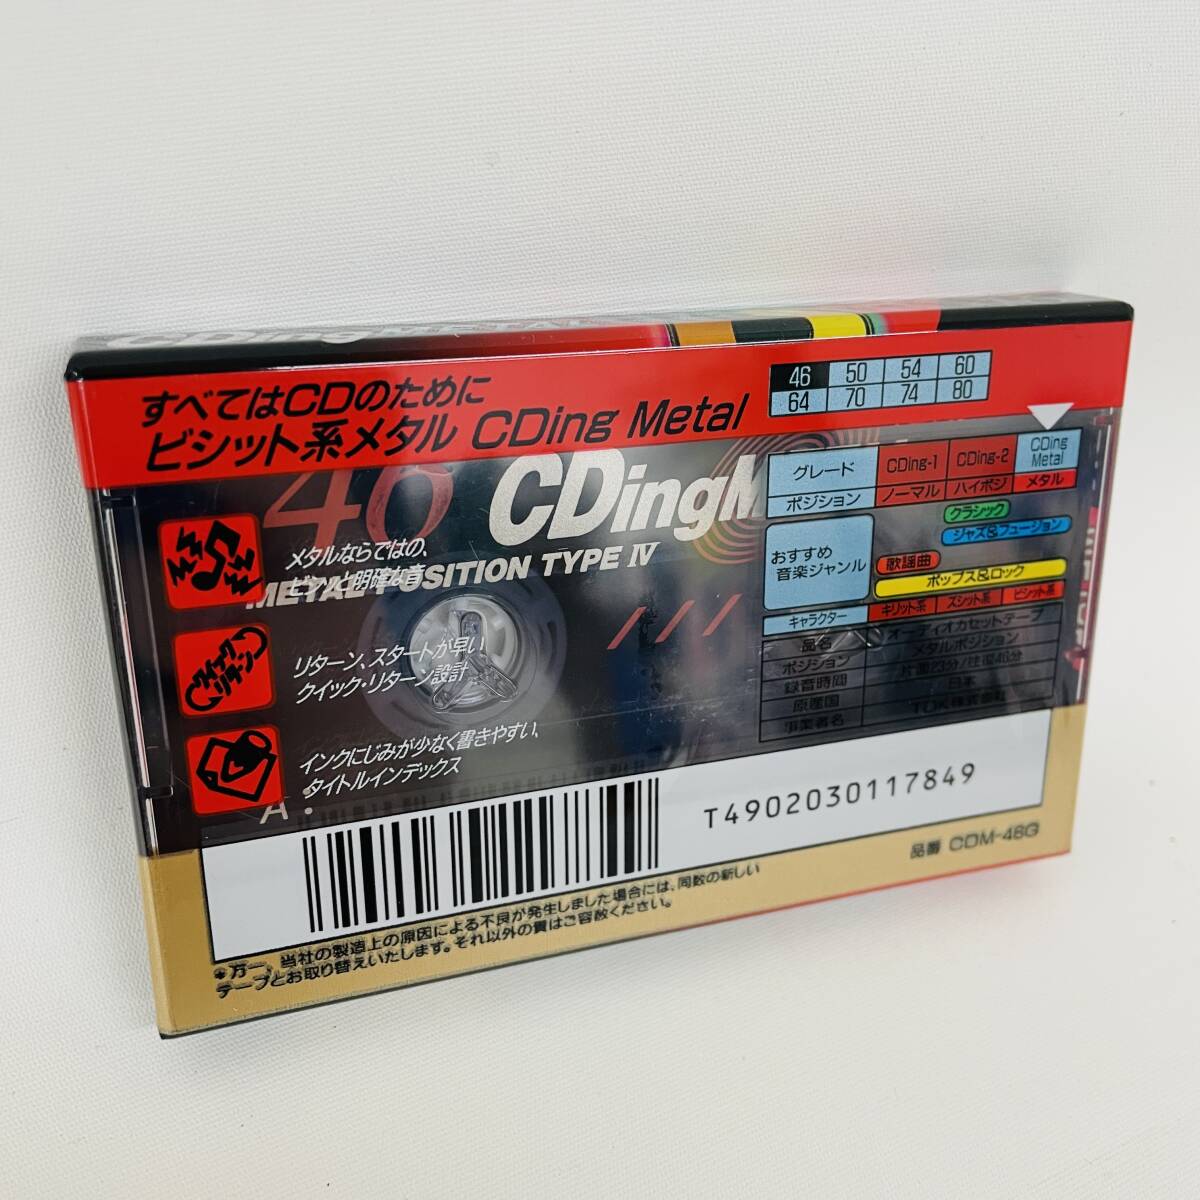 4本セット CDM-46G TDK カセットテープ メタル CDing ※ 2400010383502_画像2